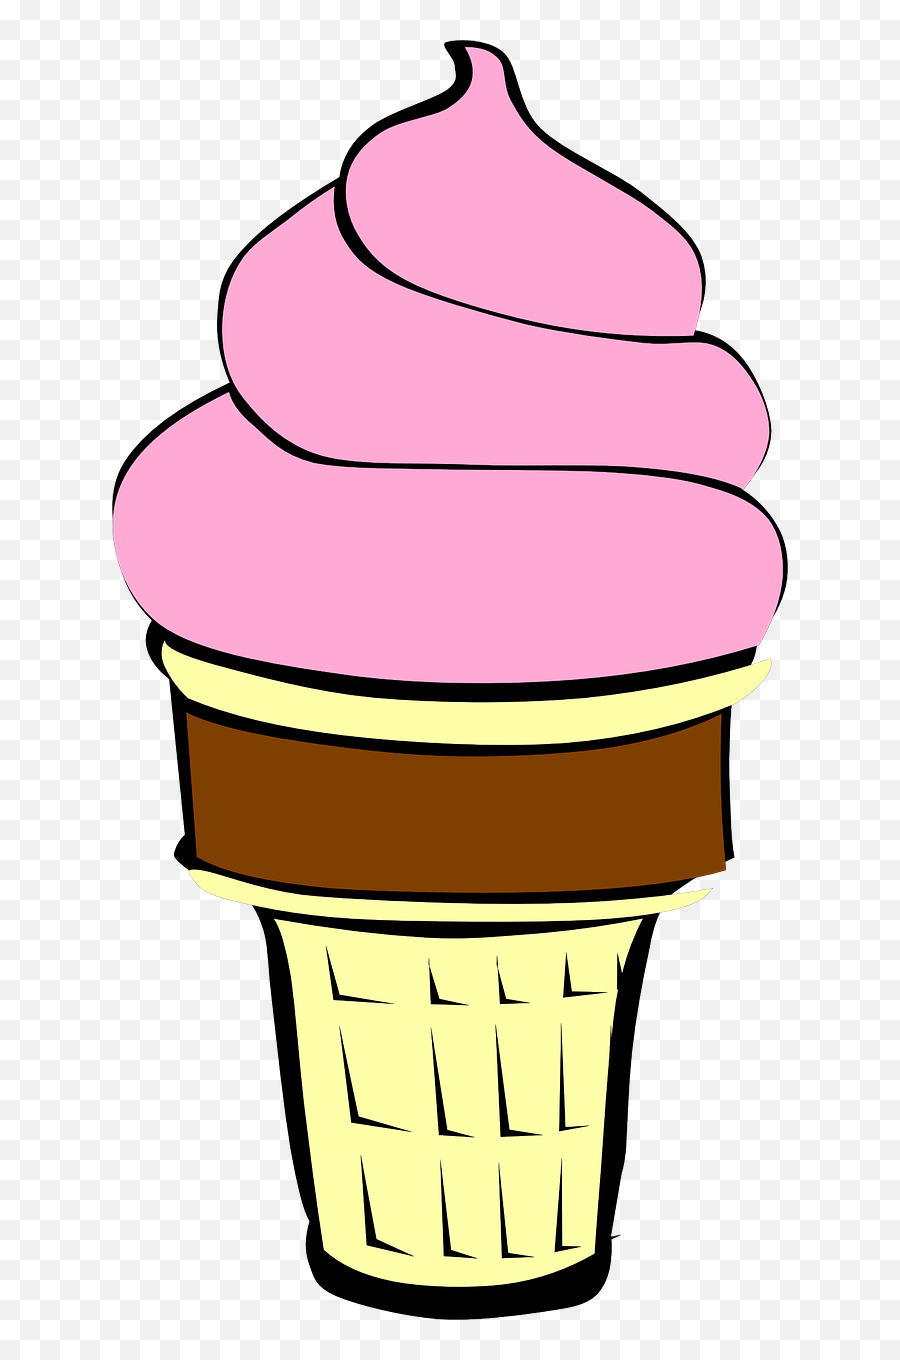 Strawberry Ice Cream Cone Clipart - Clip Art Bay Strawberry Ice Cream Clipart Emoji,Ice Cream Cone Clipart